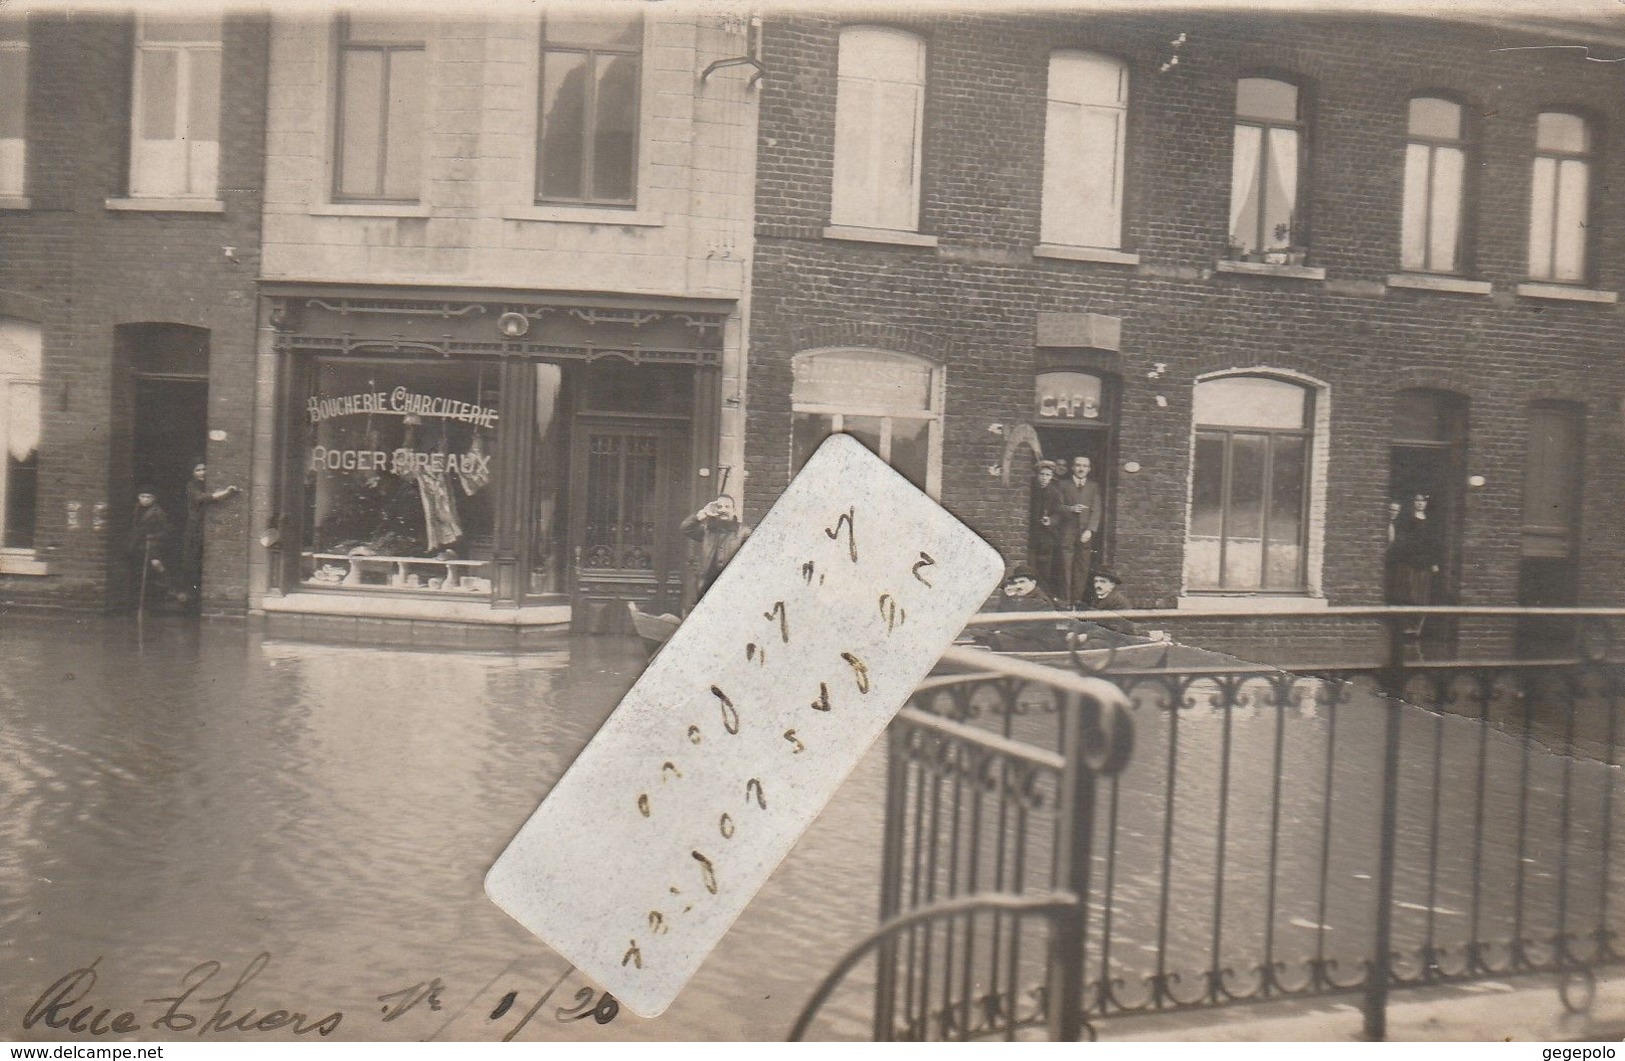 JEUMONT -  La Rue Thiers Inondée En Janvier 1926     ( Carte Photo ) - Jeumont